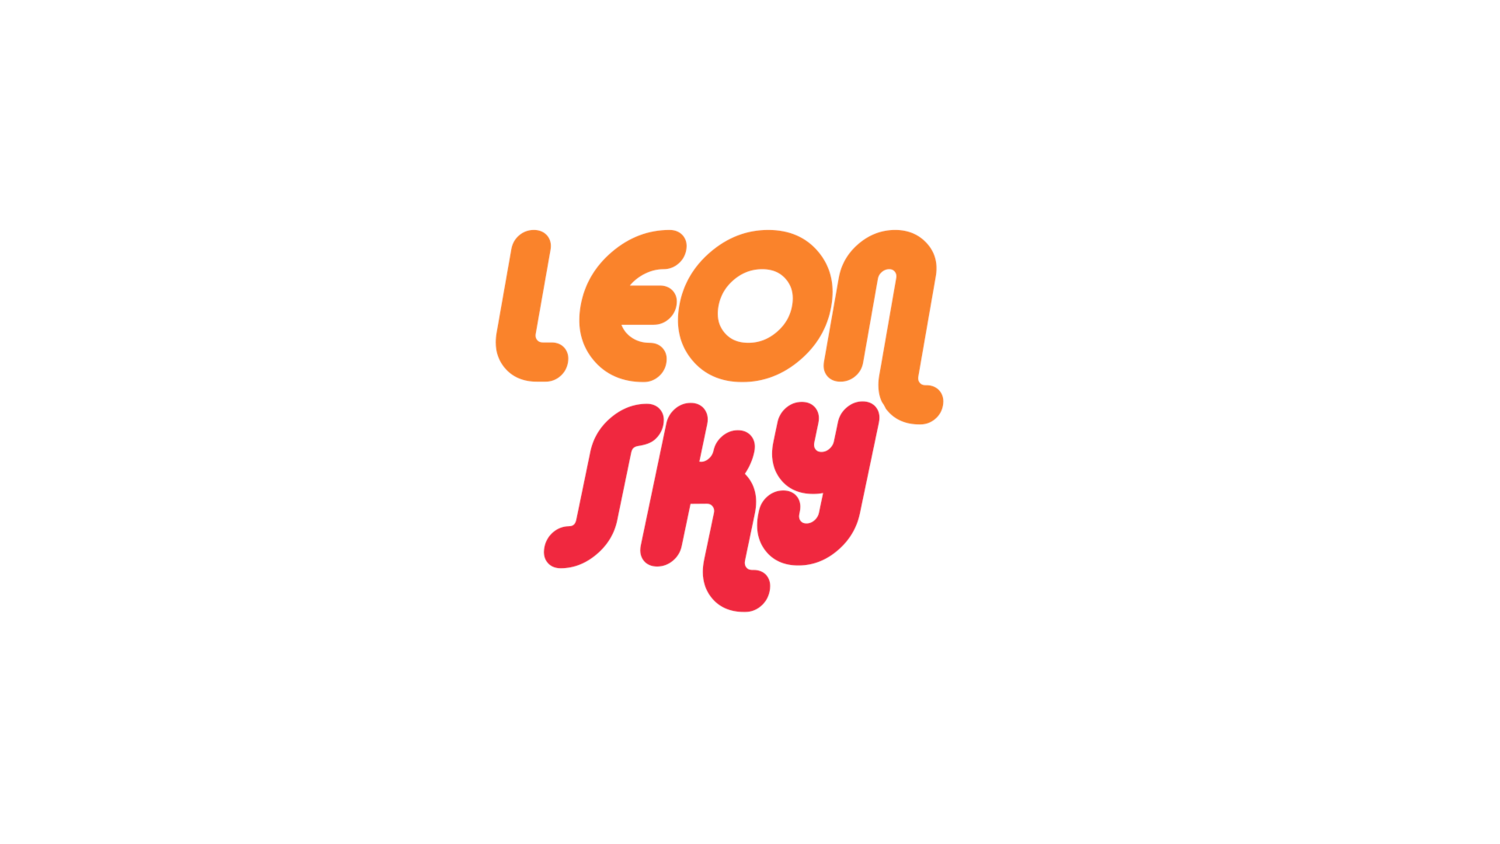 Leon Sky